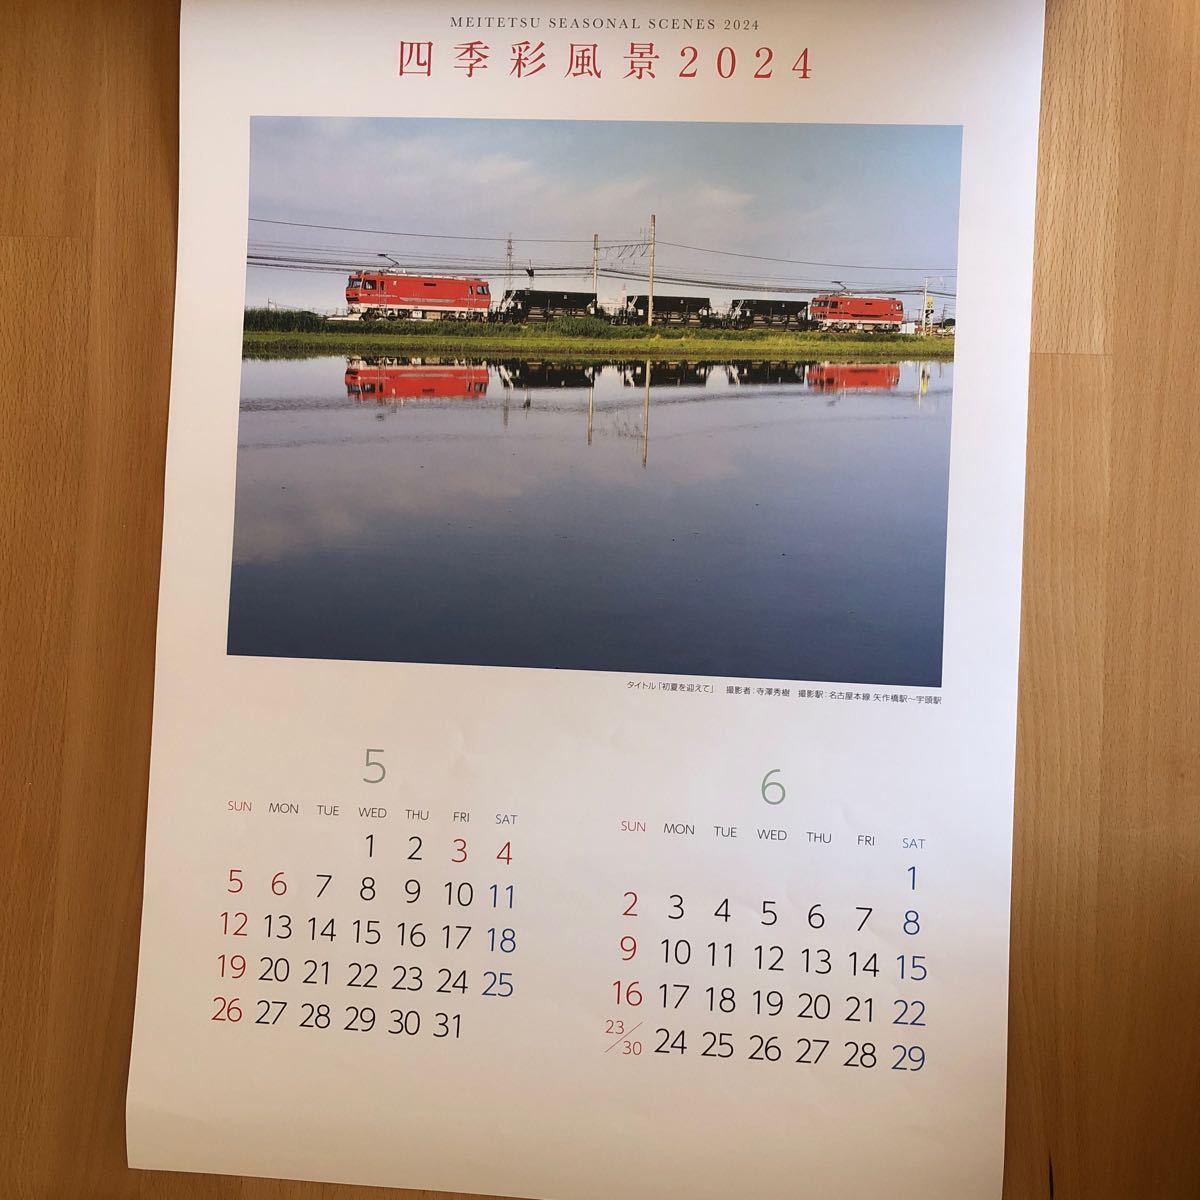 2024 名鉄 壁掛けカレンダー 四季彩風景 鉄道 列車 電車 風景 景色 写真 名古屋鉄道の画像3